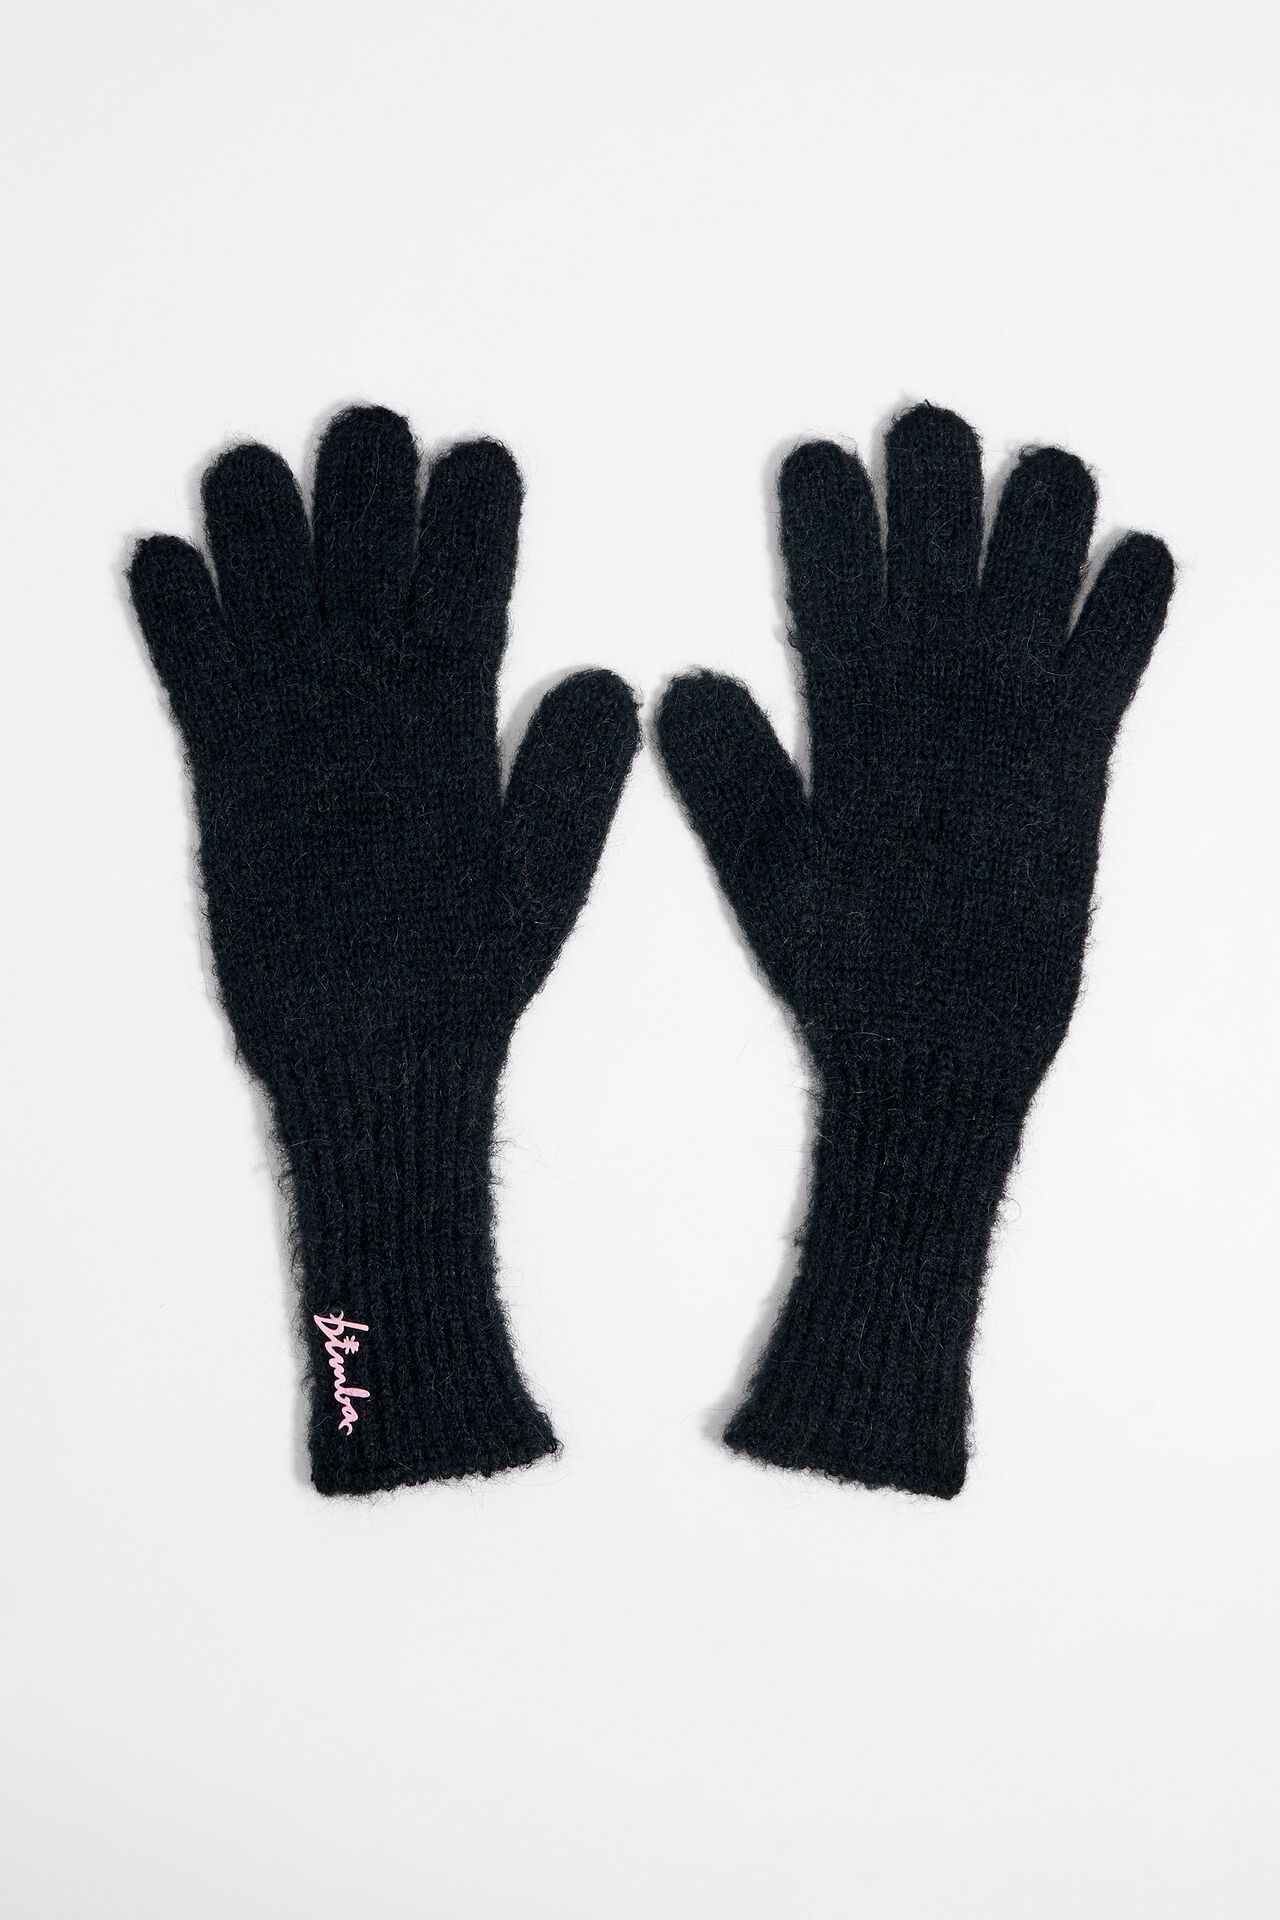 Перчатки Bimba Y Lola для женщин, трикотажные, размер M, 232BAGU01 10000, чёрные